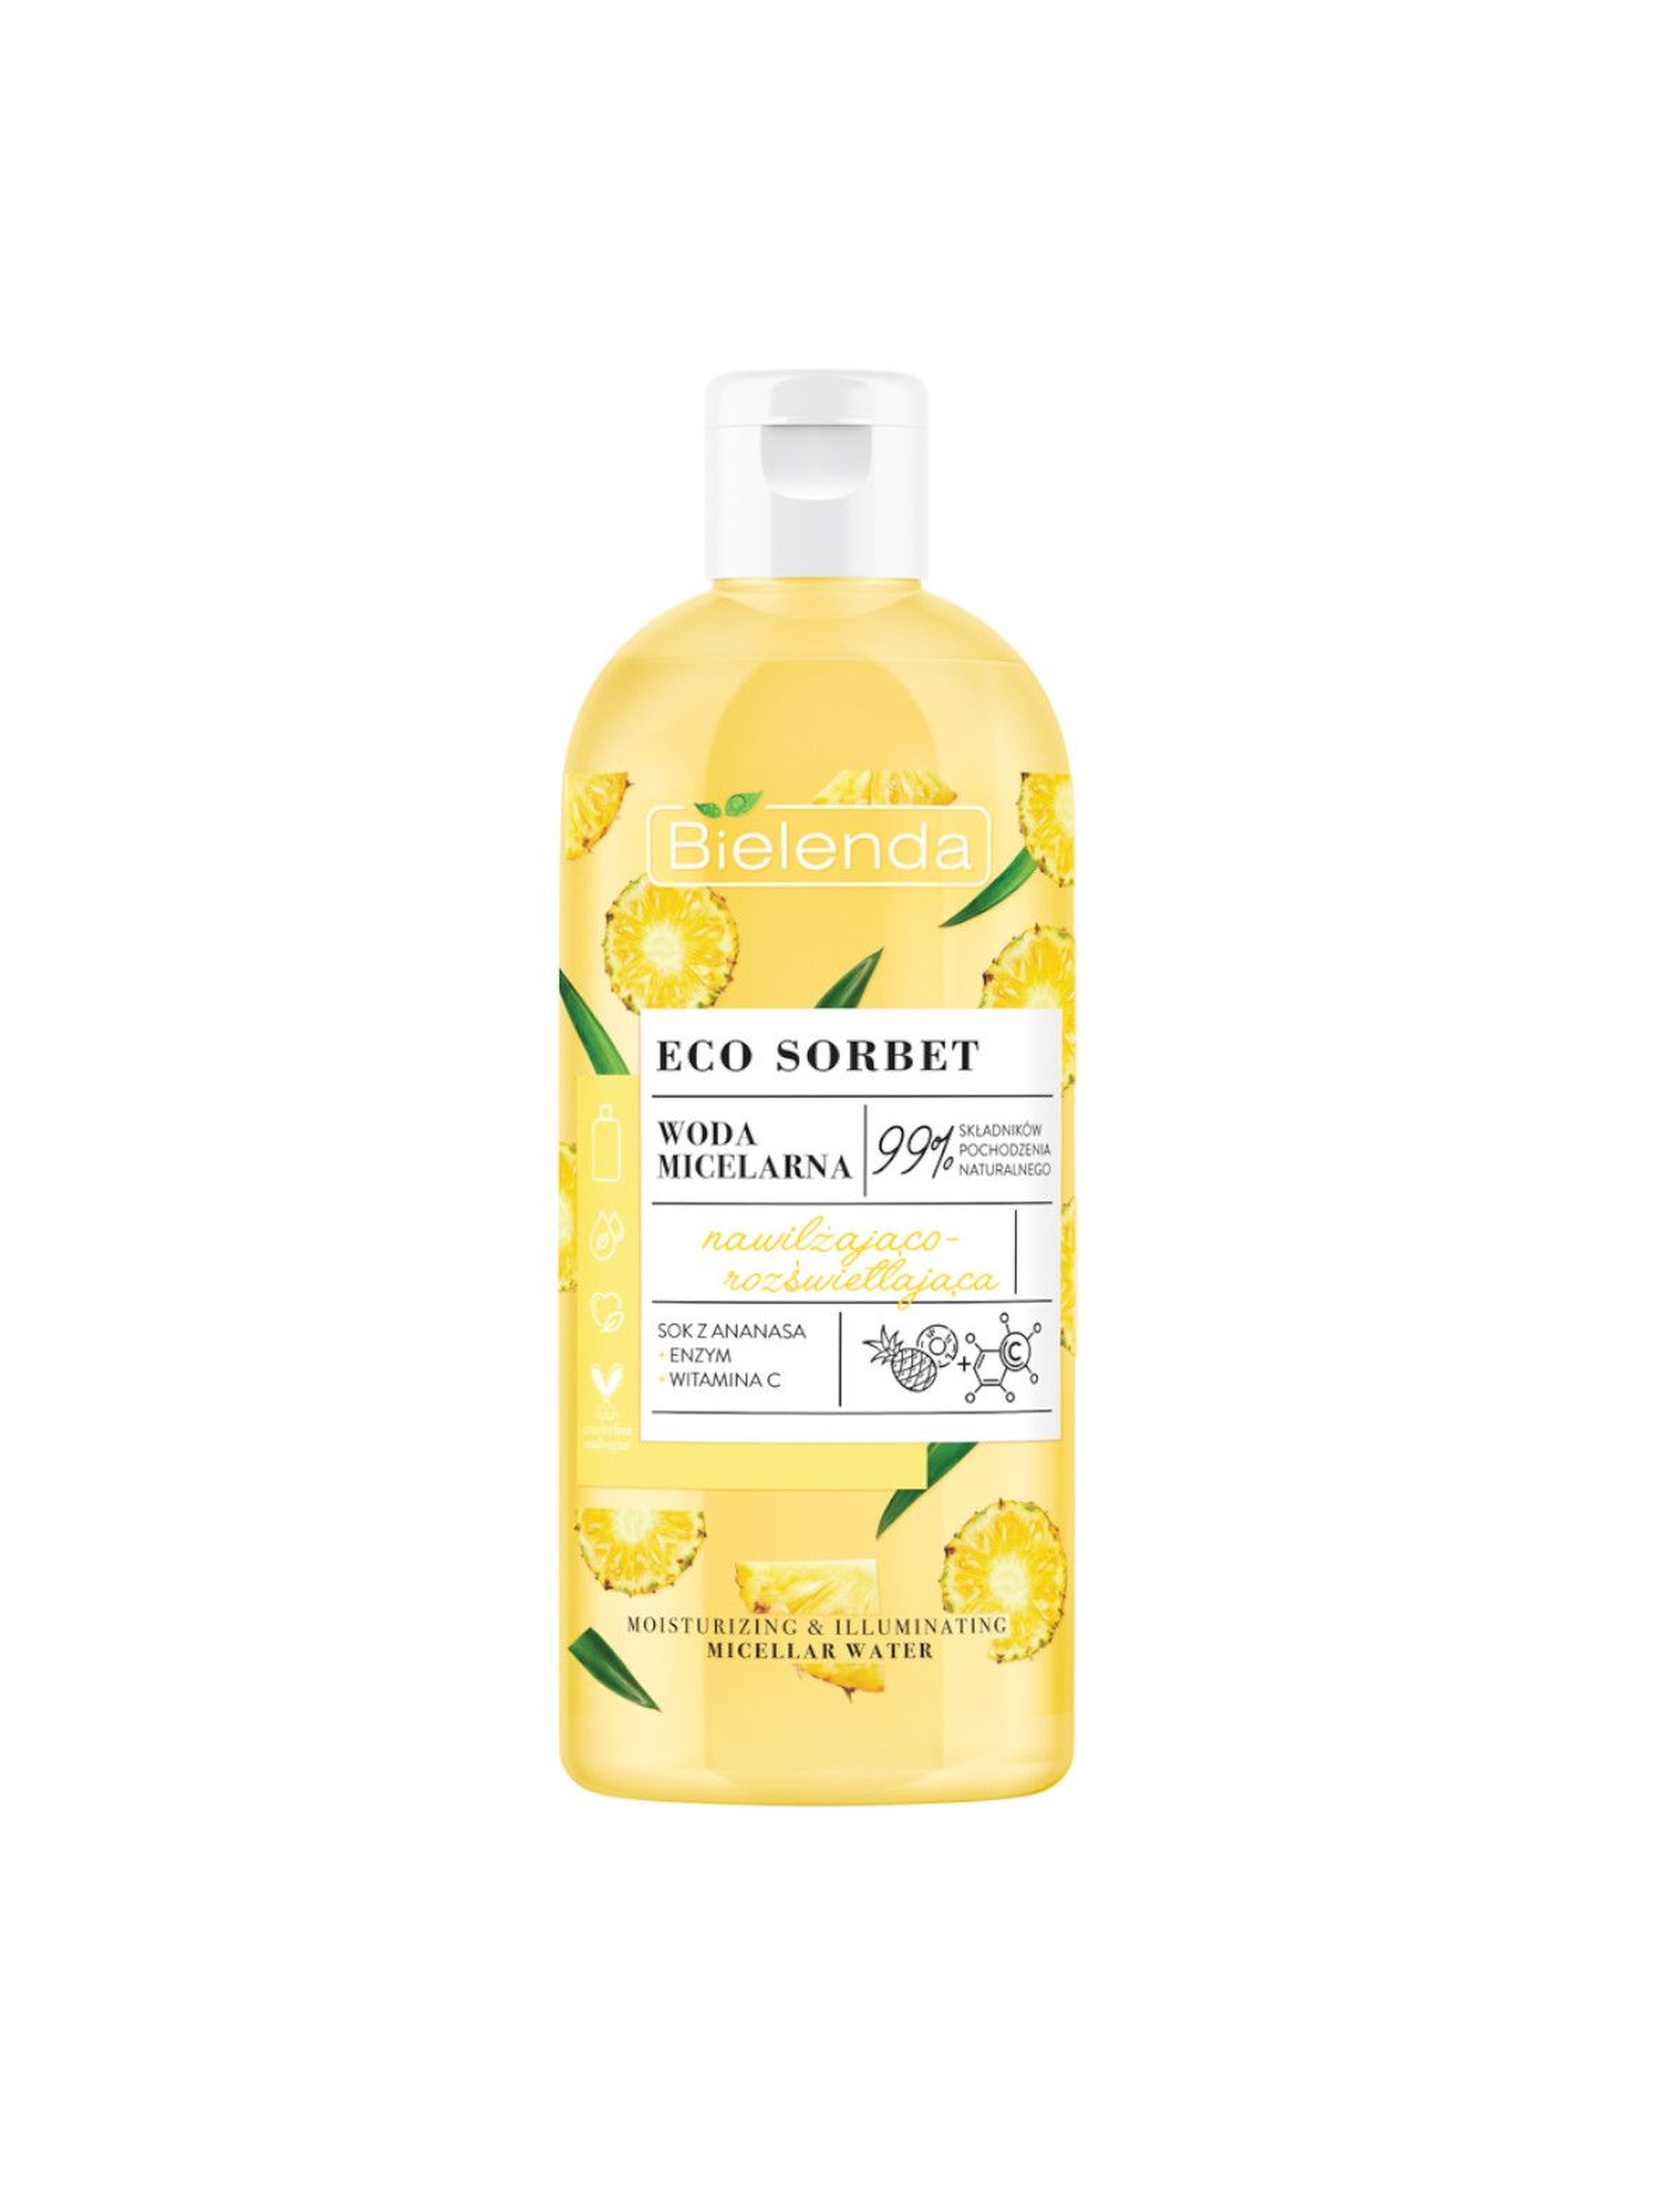 ECO SORBET Ananas - woda micelarna - nawilżająco-rozświetlająca 500 ml